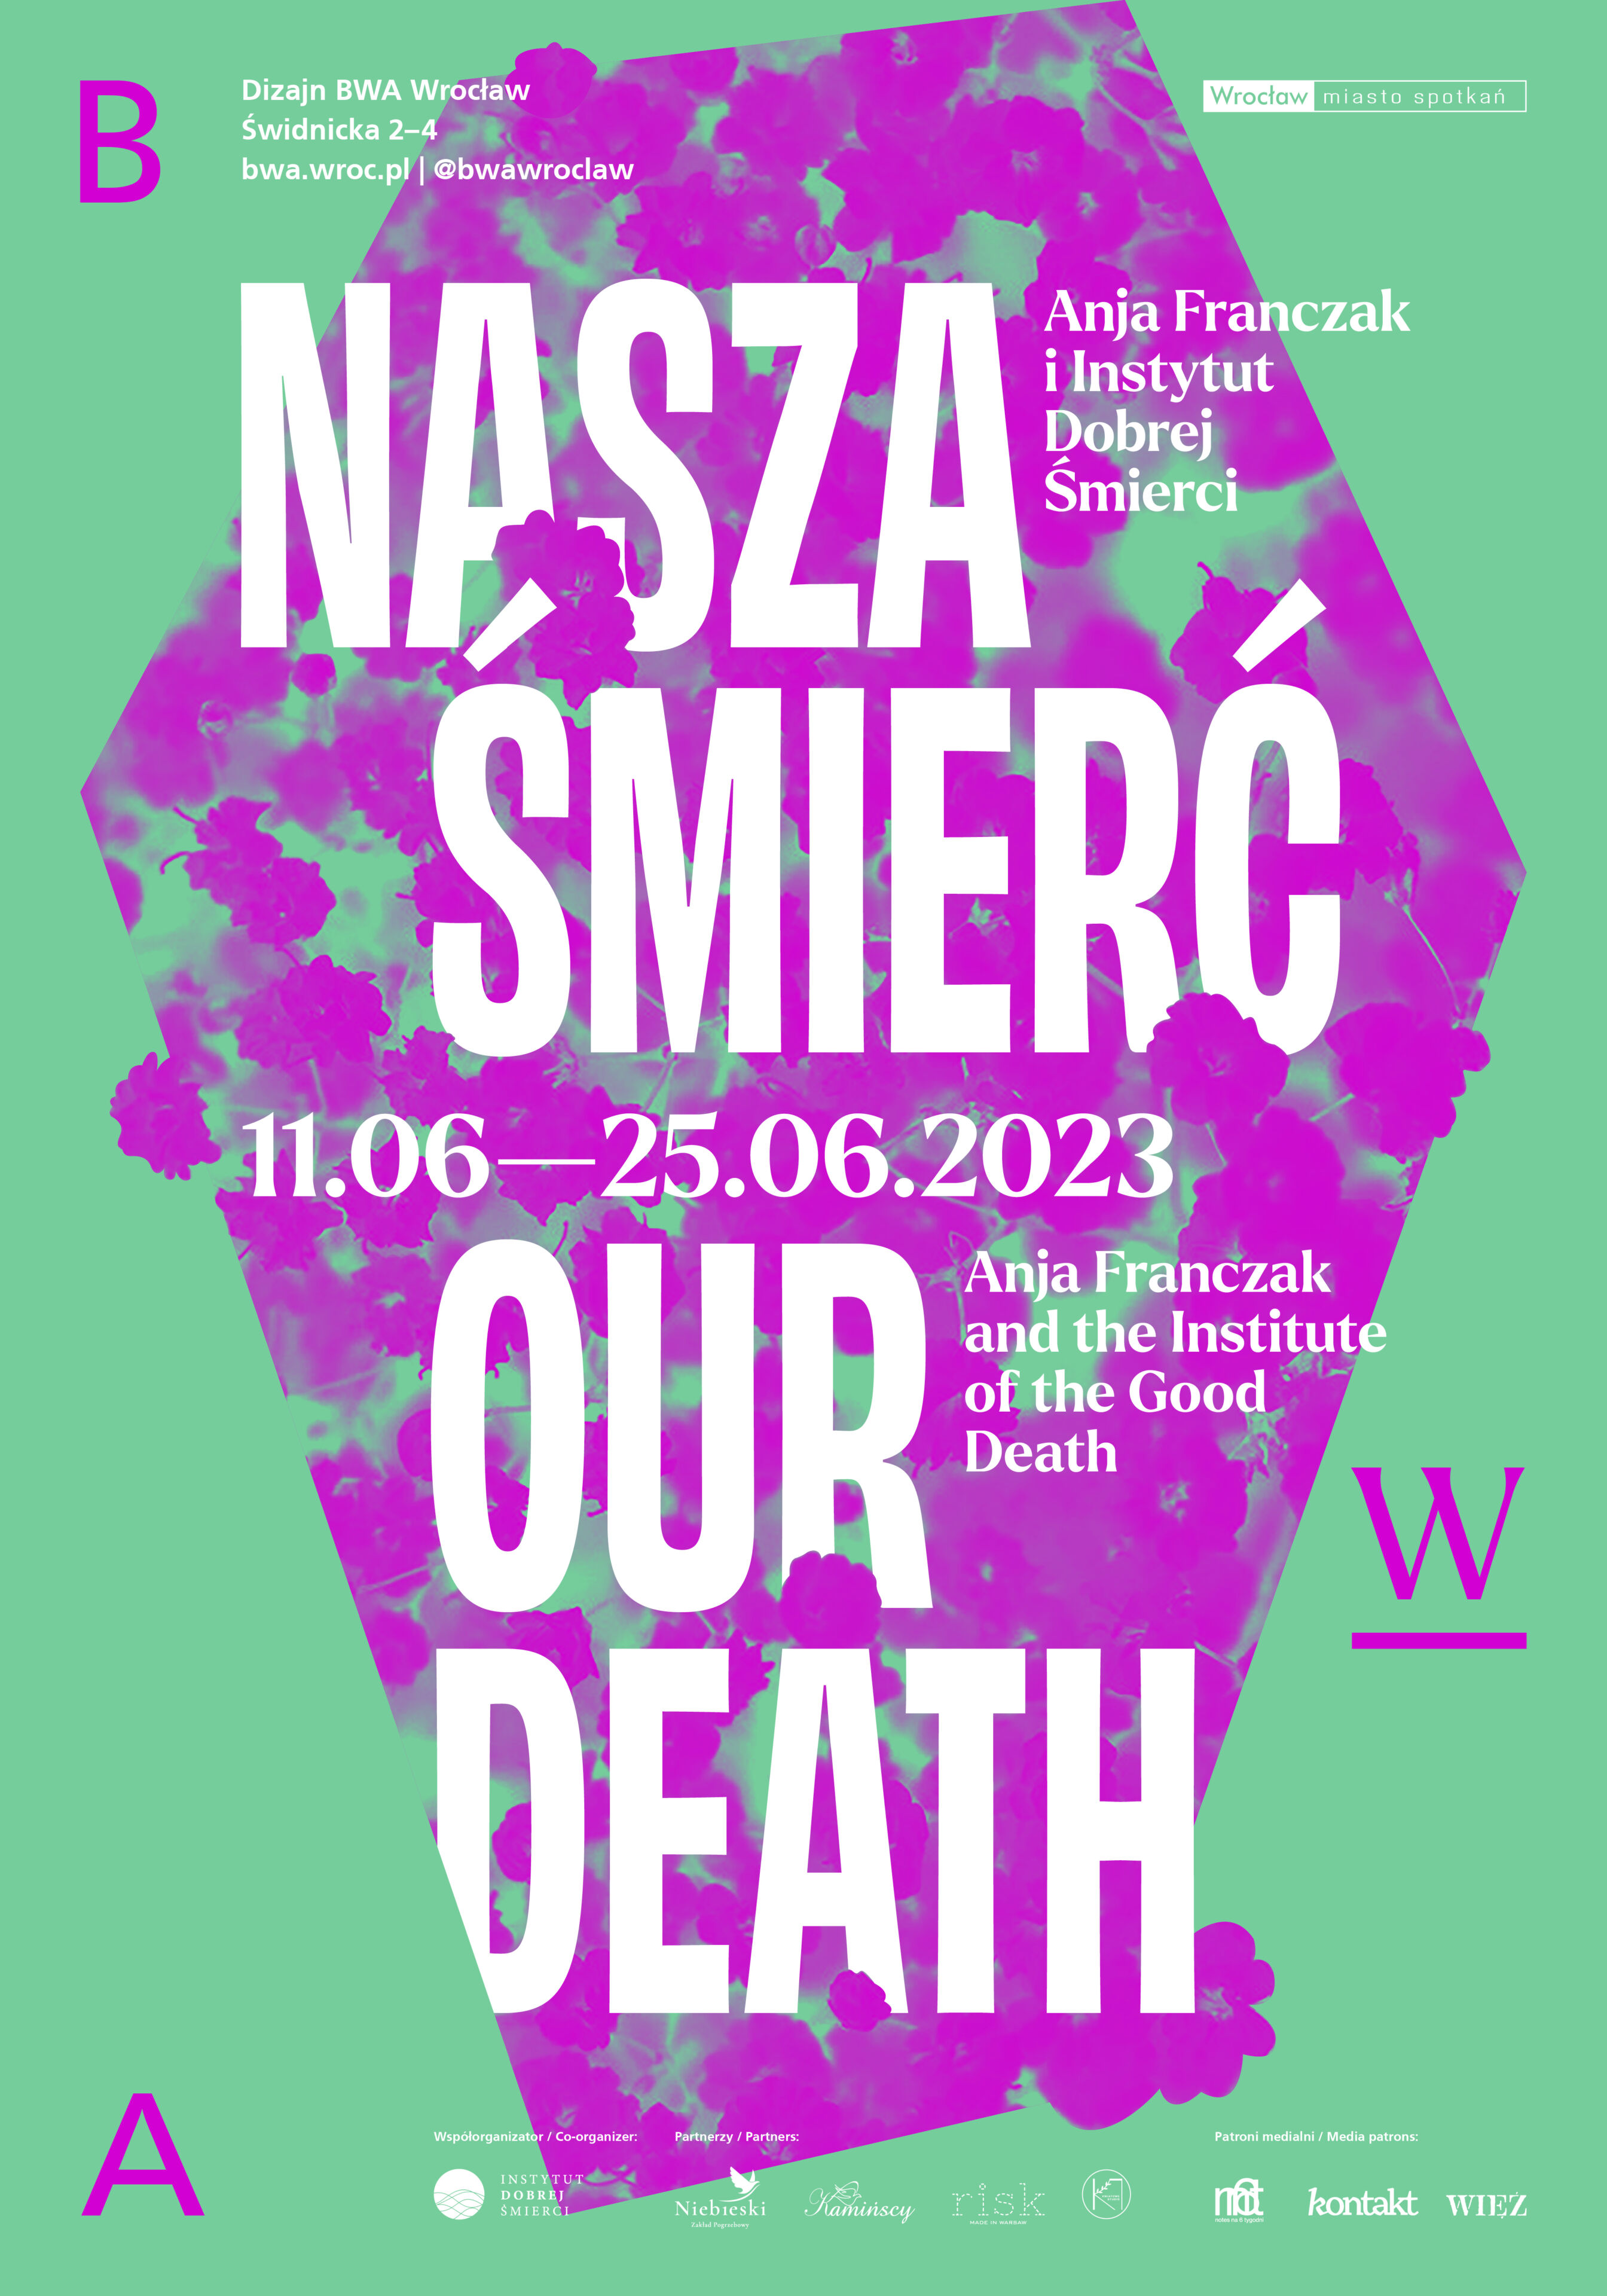 Plakat wystawy Nasza śmierć zawierający biały napis na tle purpurowego kształtu trumny złożonego z kwiatów, całość na zielony tle